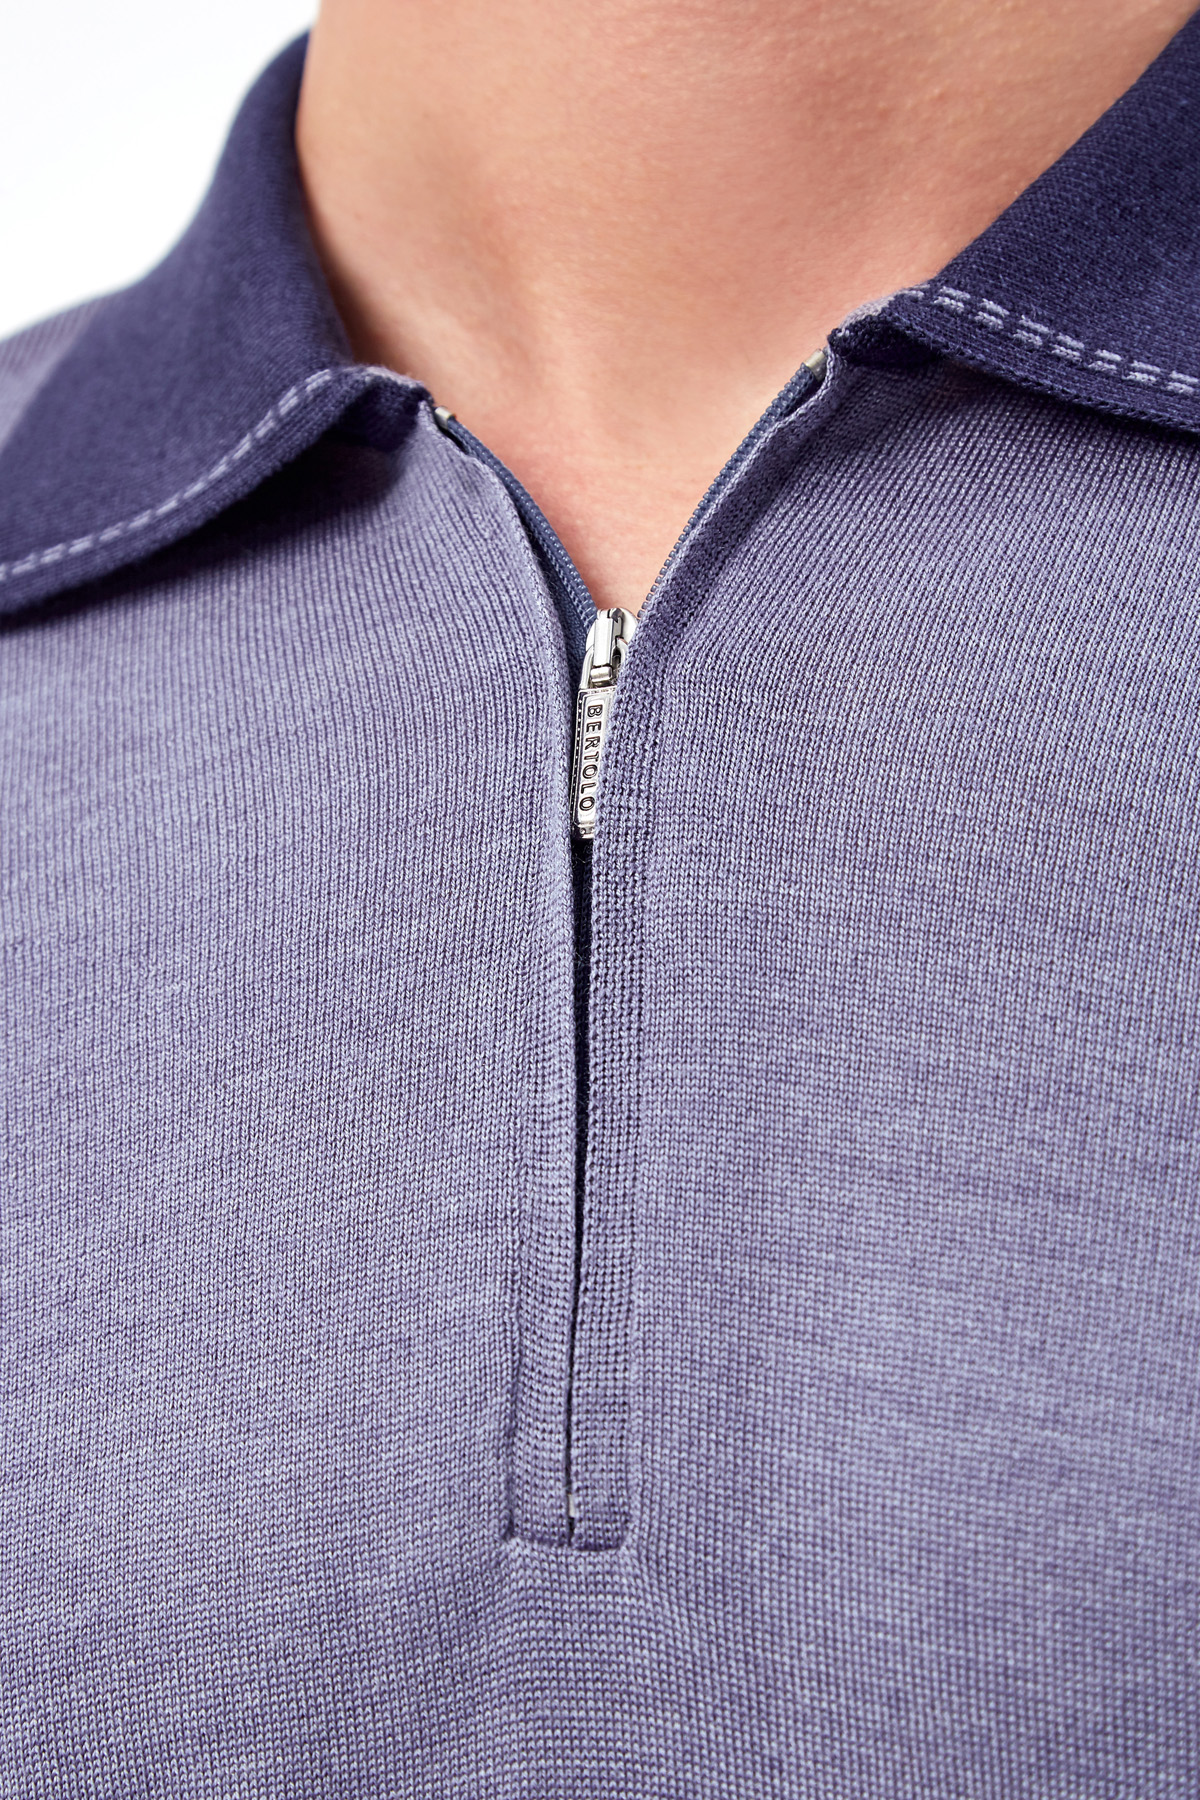 Джемпер-поло в стиле colorblock из шерсти и шелка BERTOLO CASHMERE, цвет фиолетовый, размер 54;56;58;60;62;52 - фото 5